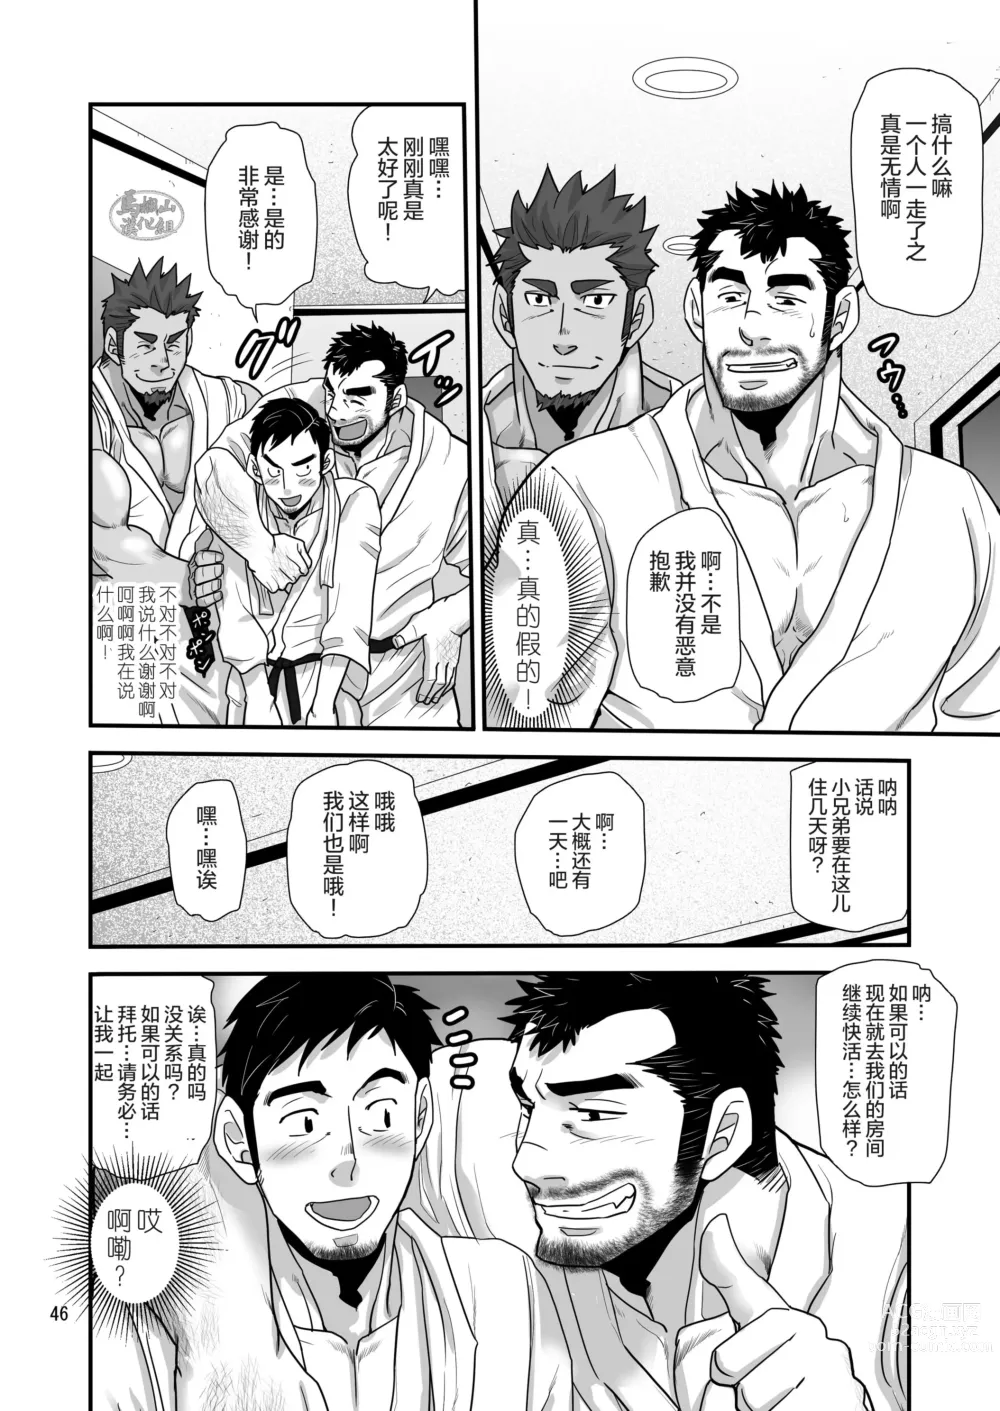 Page 46 of manga 松武互悦同衆!!_旅の恥はヌキすて